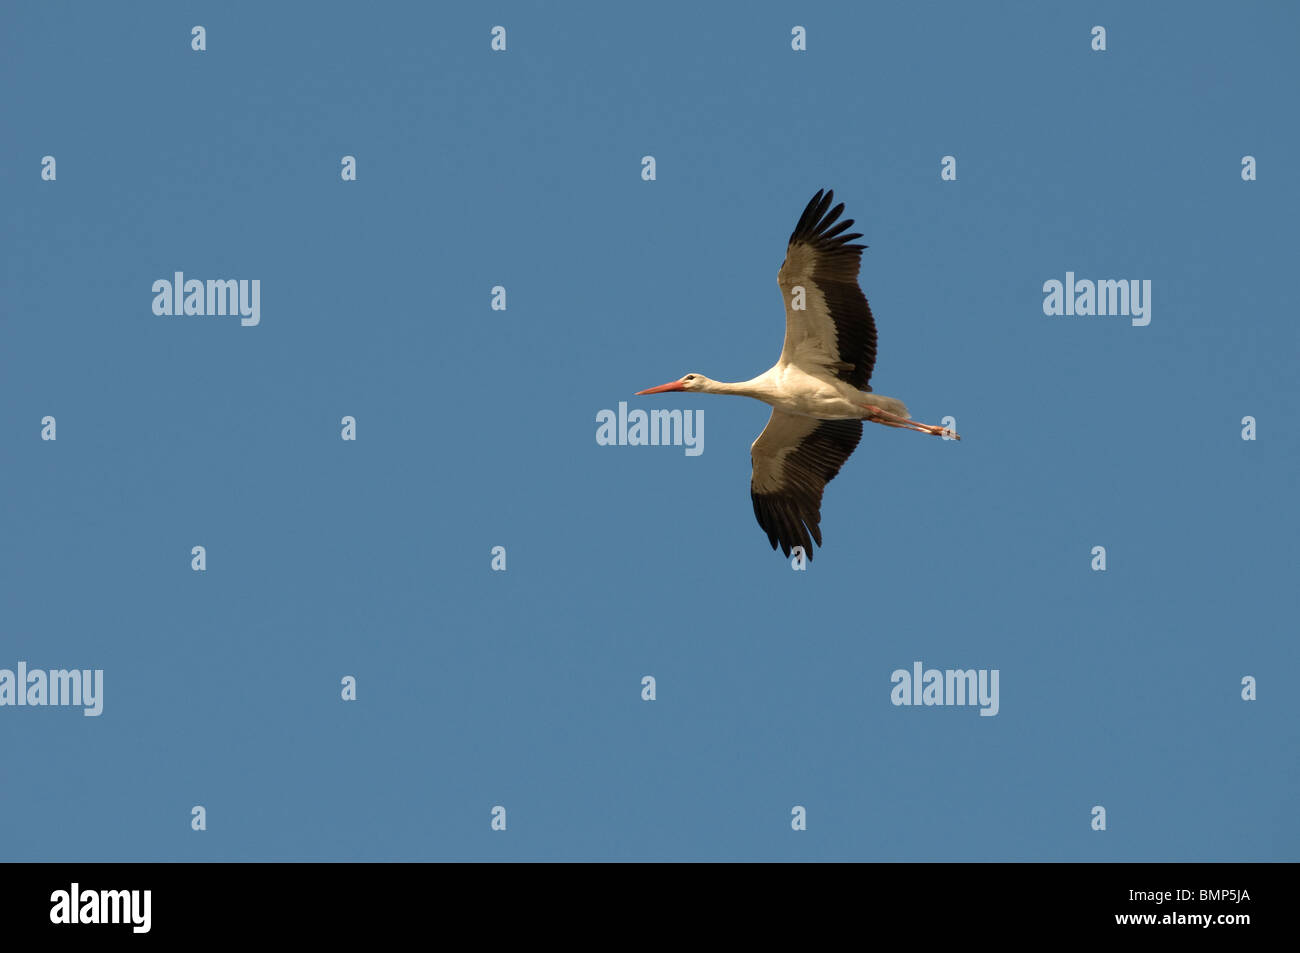 Common Eurasian crane flying over the Jordan valley in Israel Stock Photo